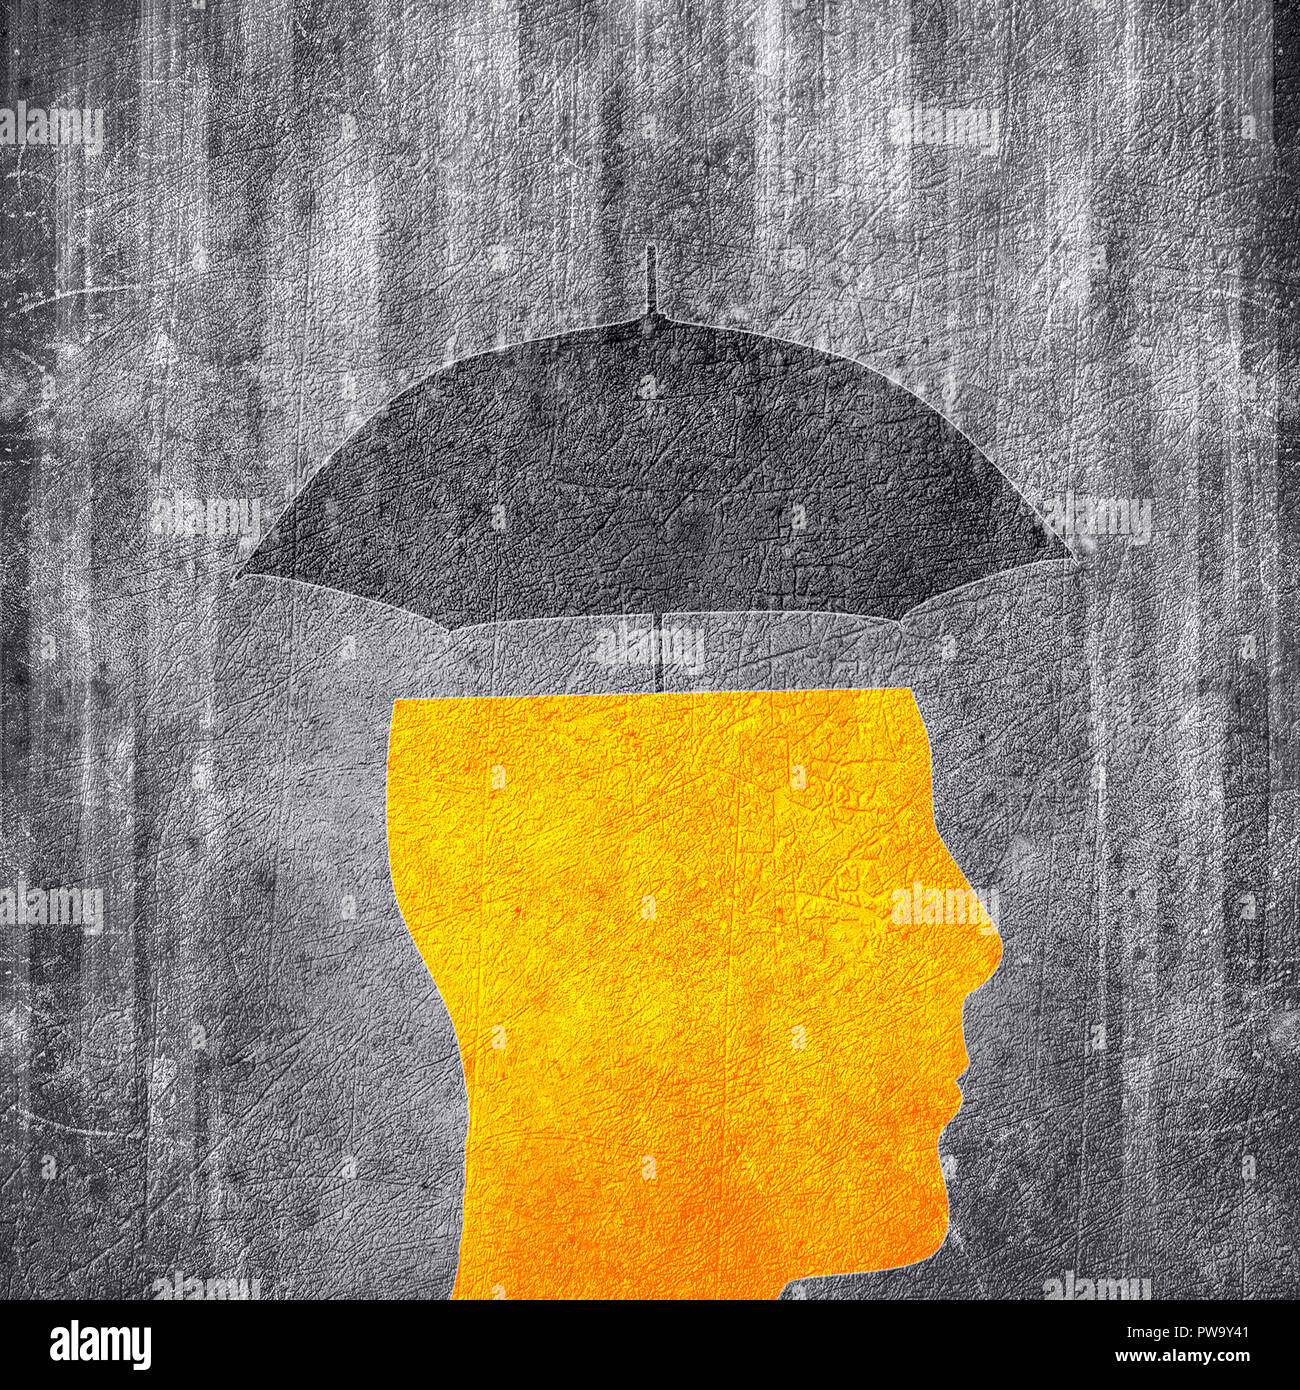 Menschlichen Kopf und Regenschirm konzeptionelle digitale Illustration Stockfoto